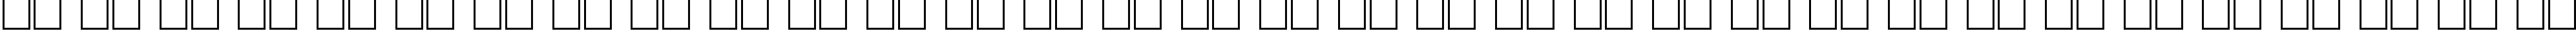 Пример написания русского алфавита шрифтом LiteraturnayaCTT Italic